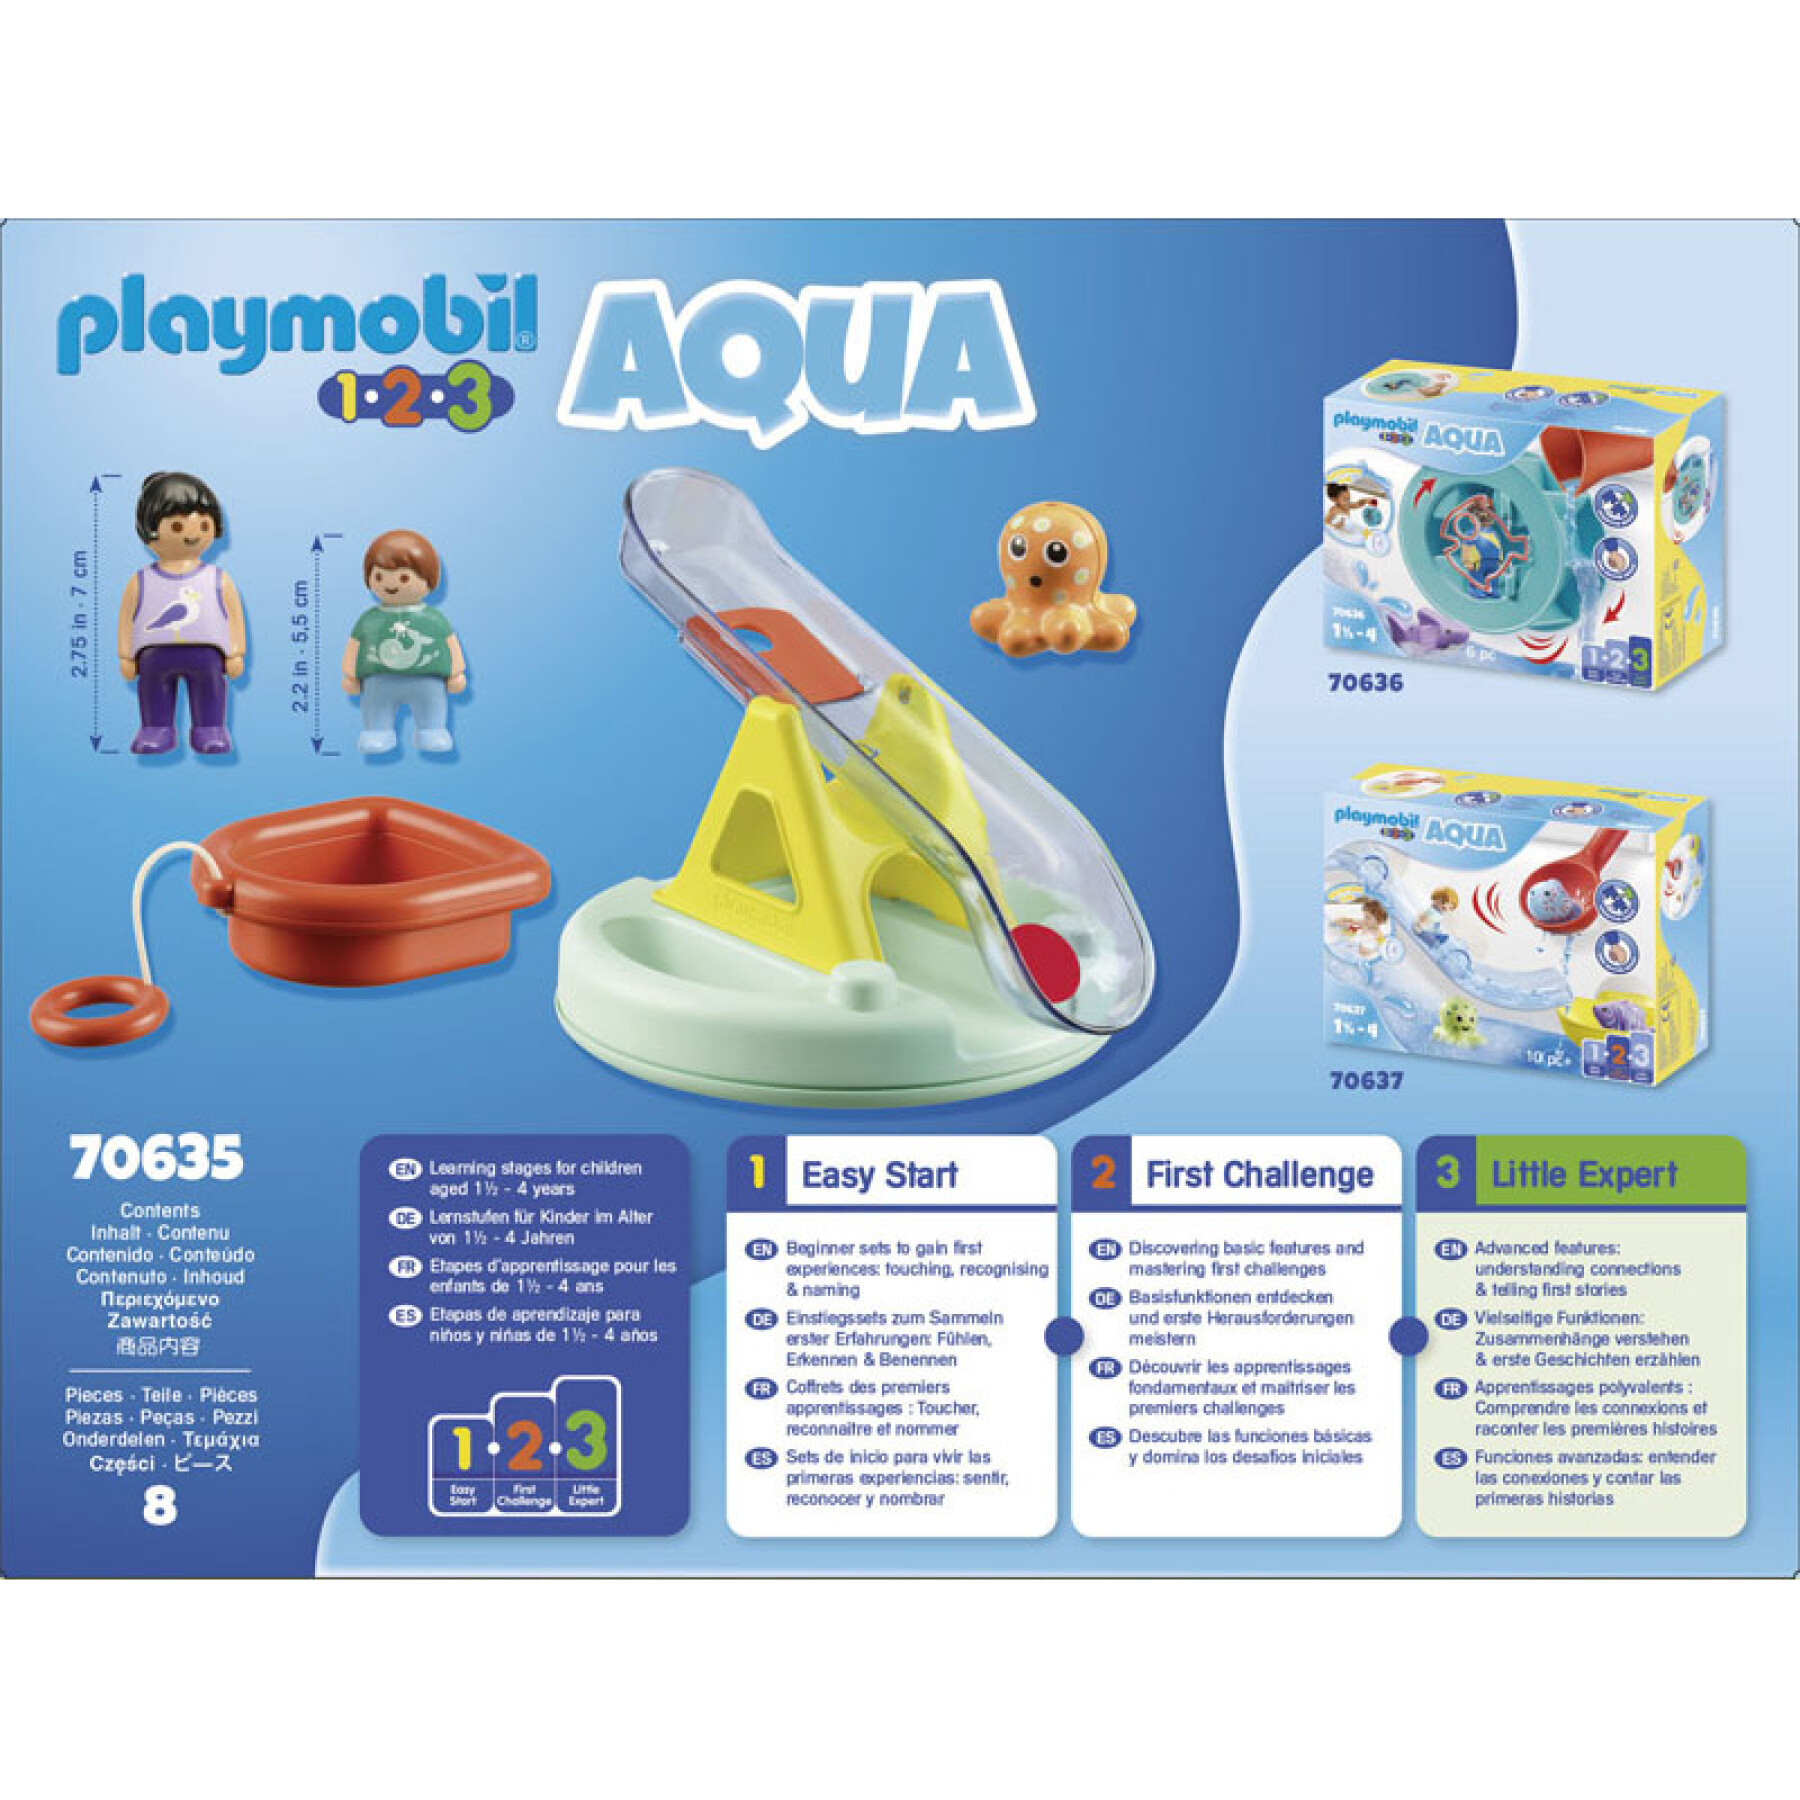 Jeux d'imagination Ilot Toboggan Aquatique Playmobil 37653